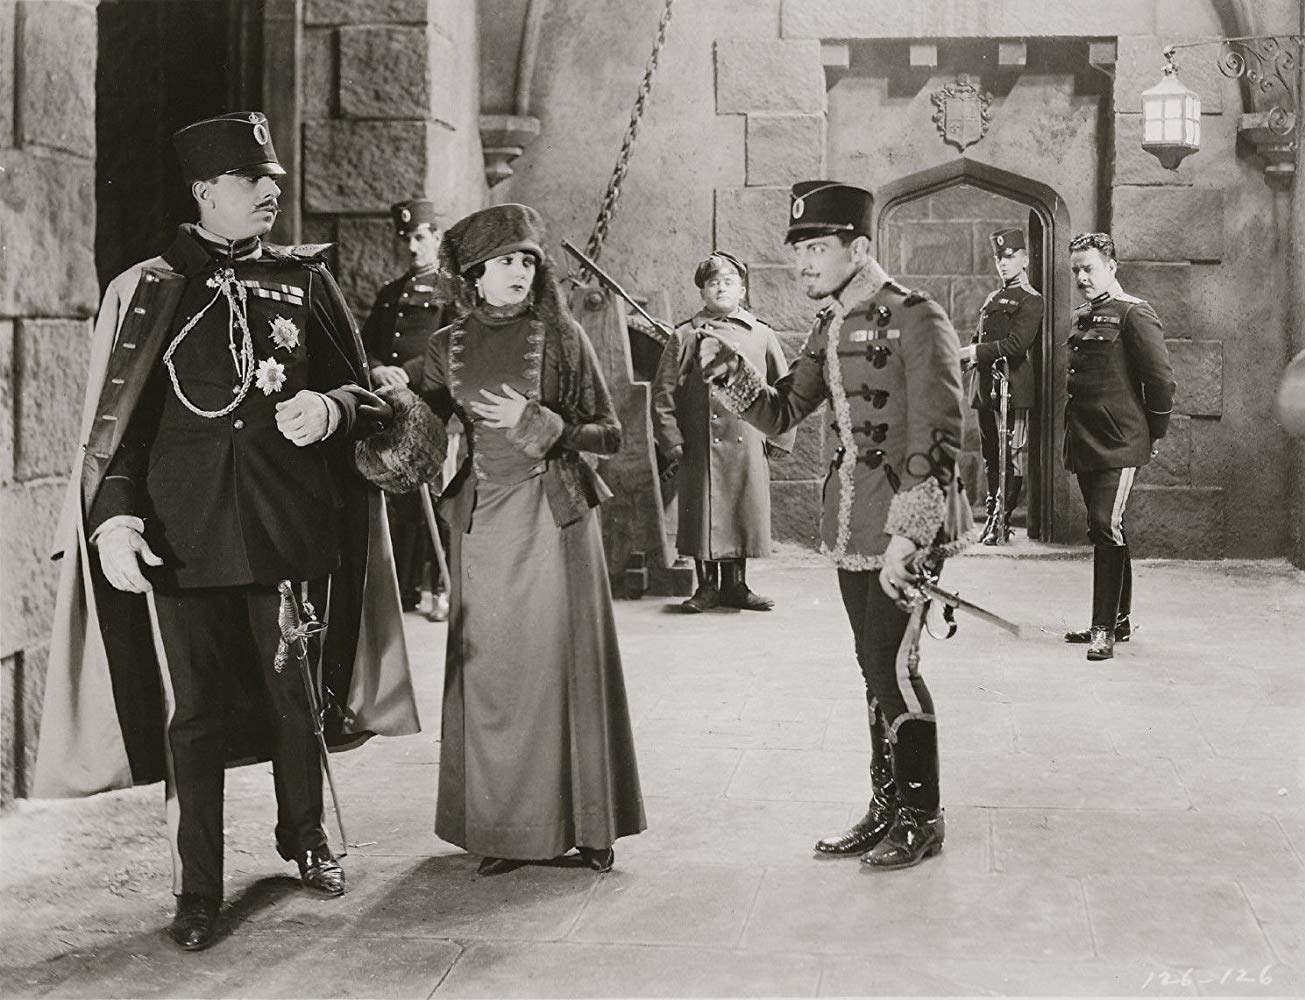 Barbara La Marr, Ramon Novarro and Stuart Holmes in "The Prisoner of Zenda", 1922